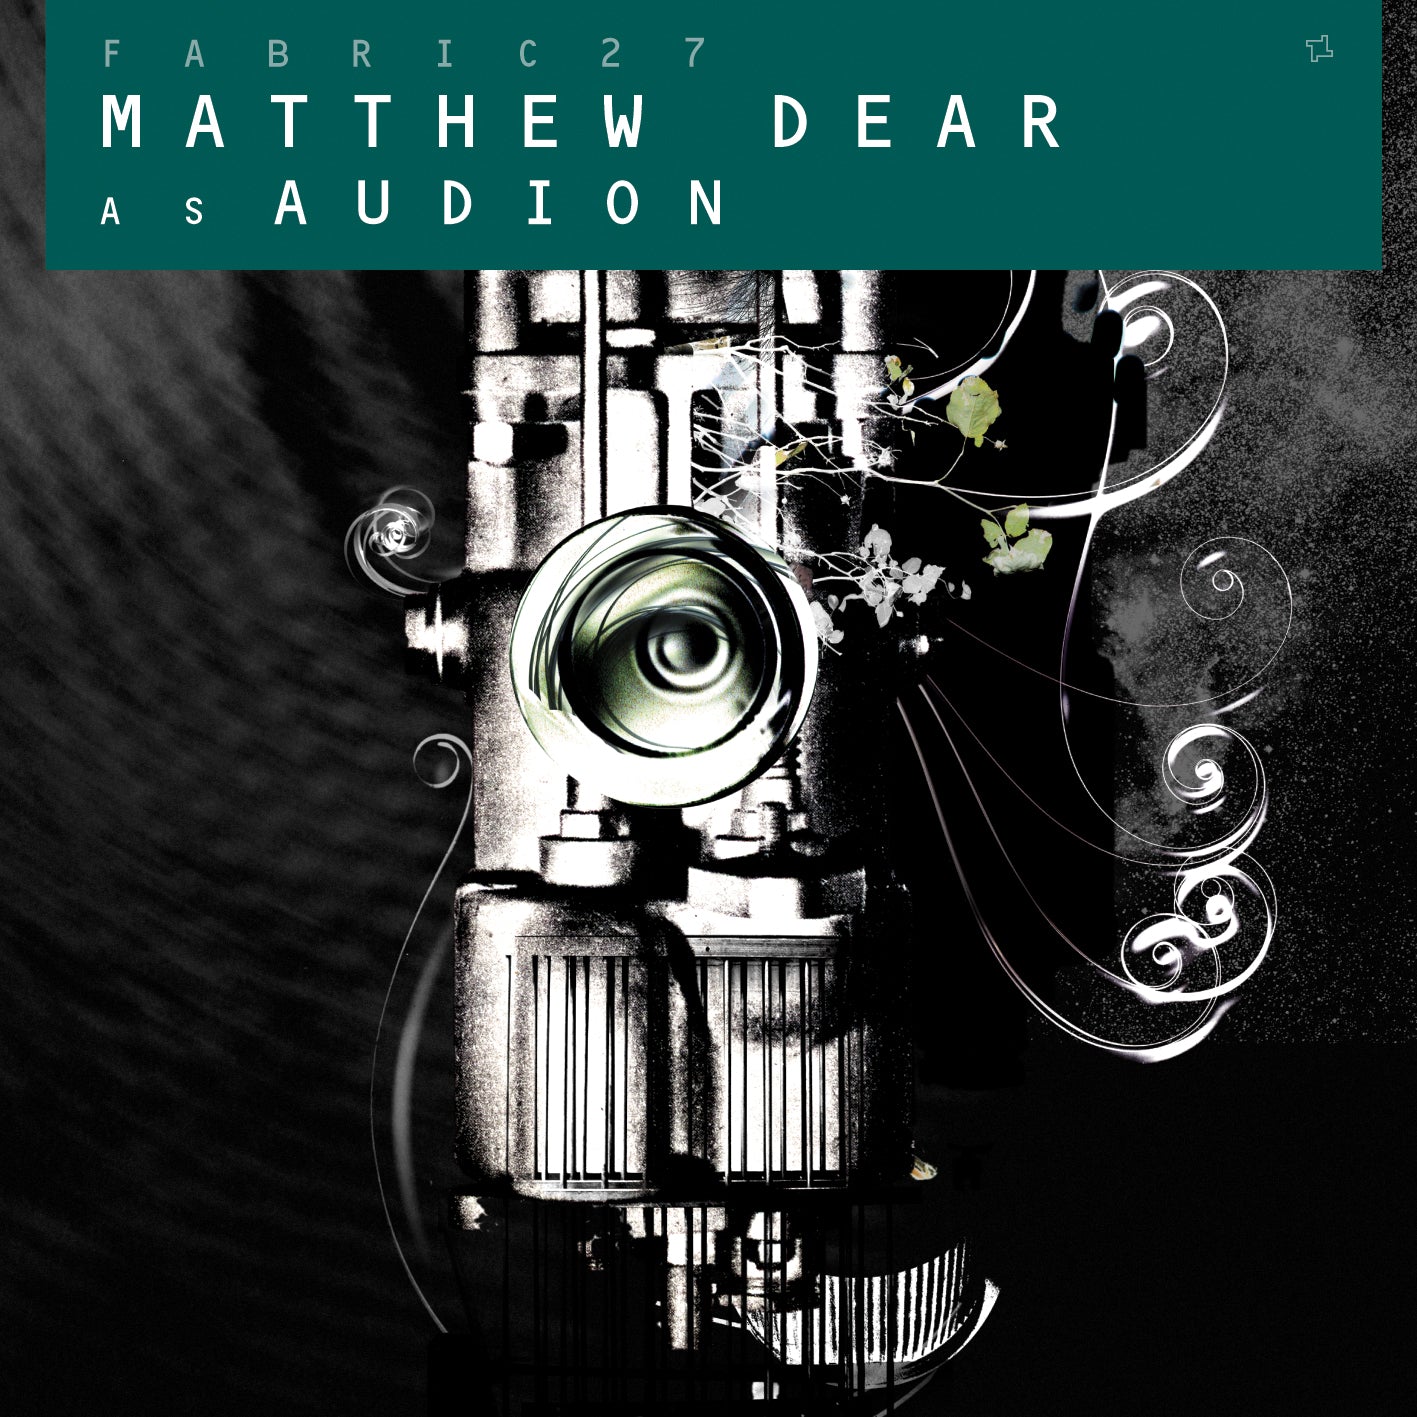 Mattew Dear as Audion - fabric 27